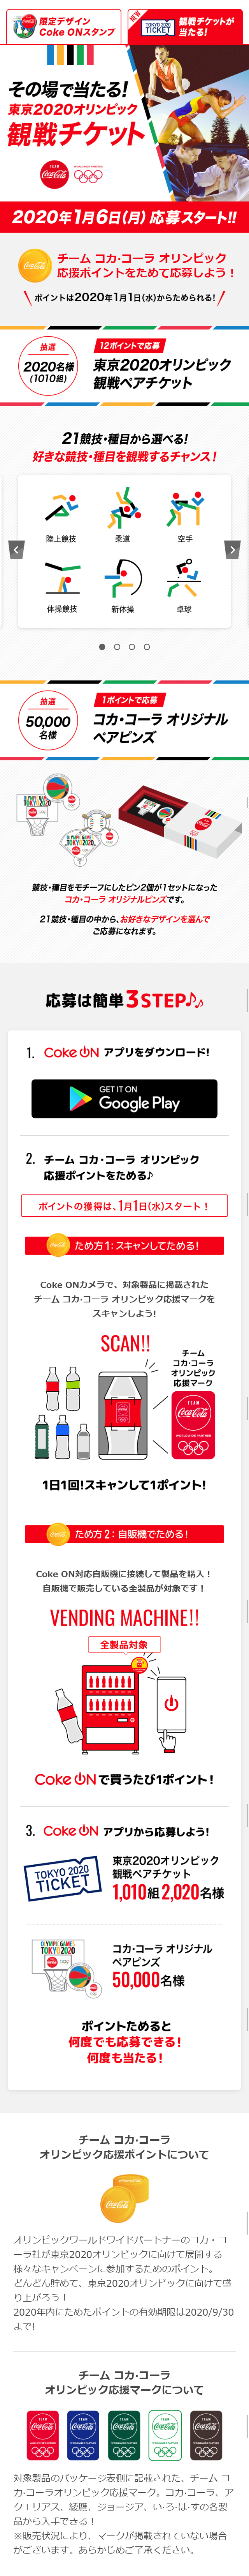 コカ・コーラ 東京2020オリンピック応援キャンペーン_sp_1